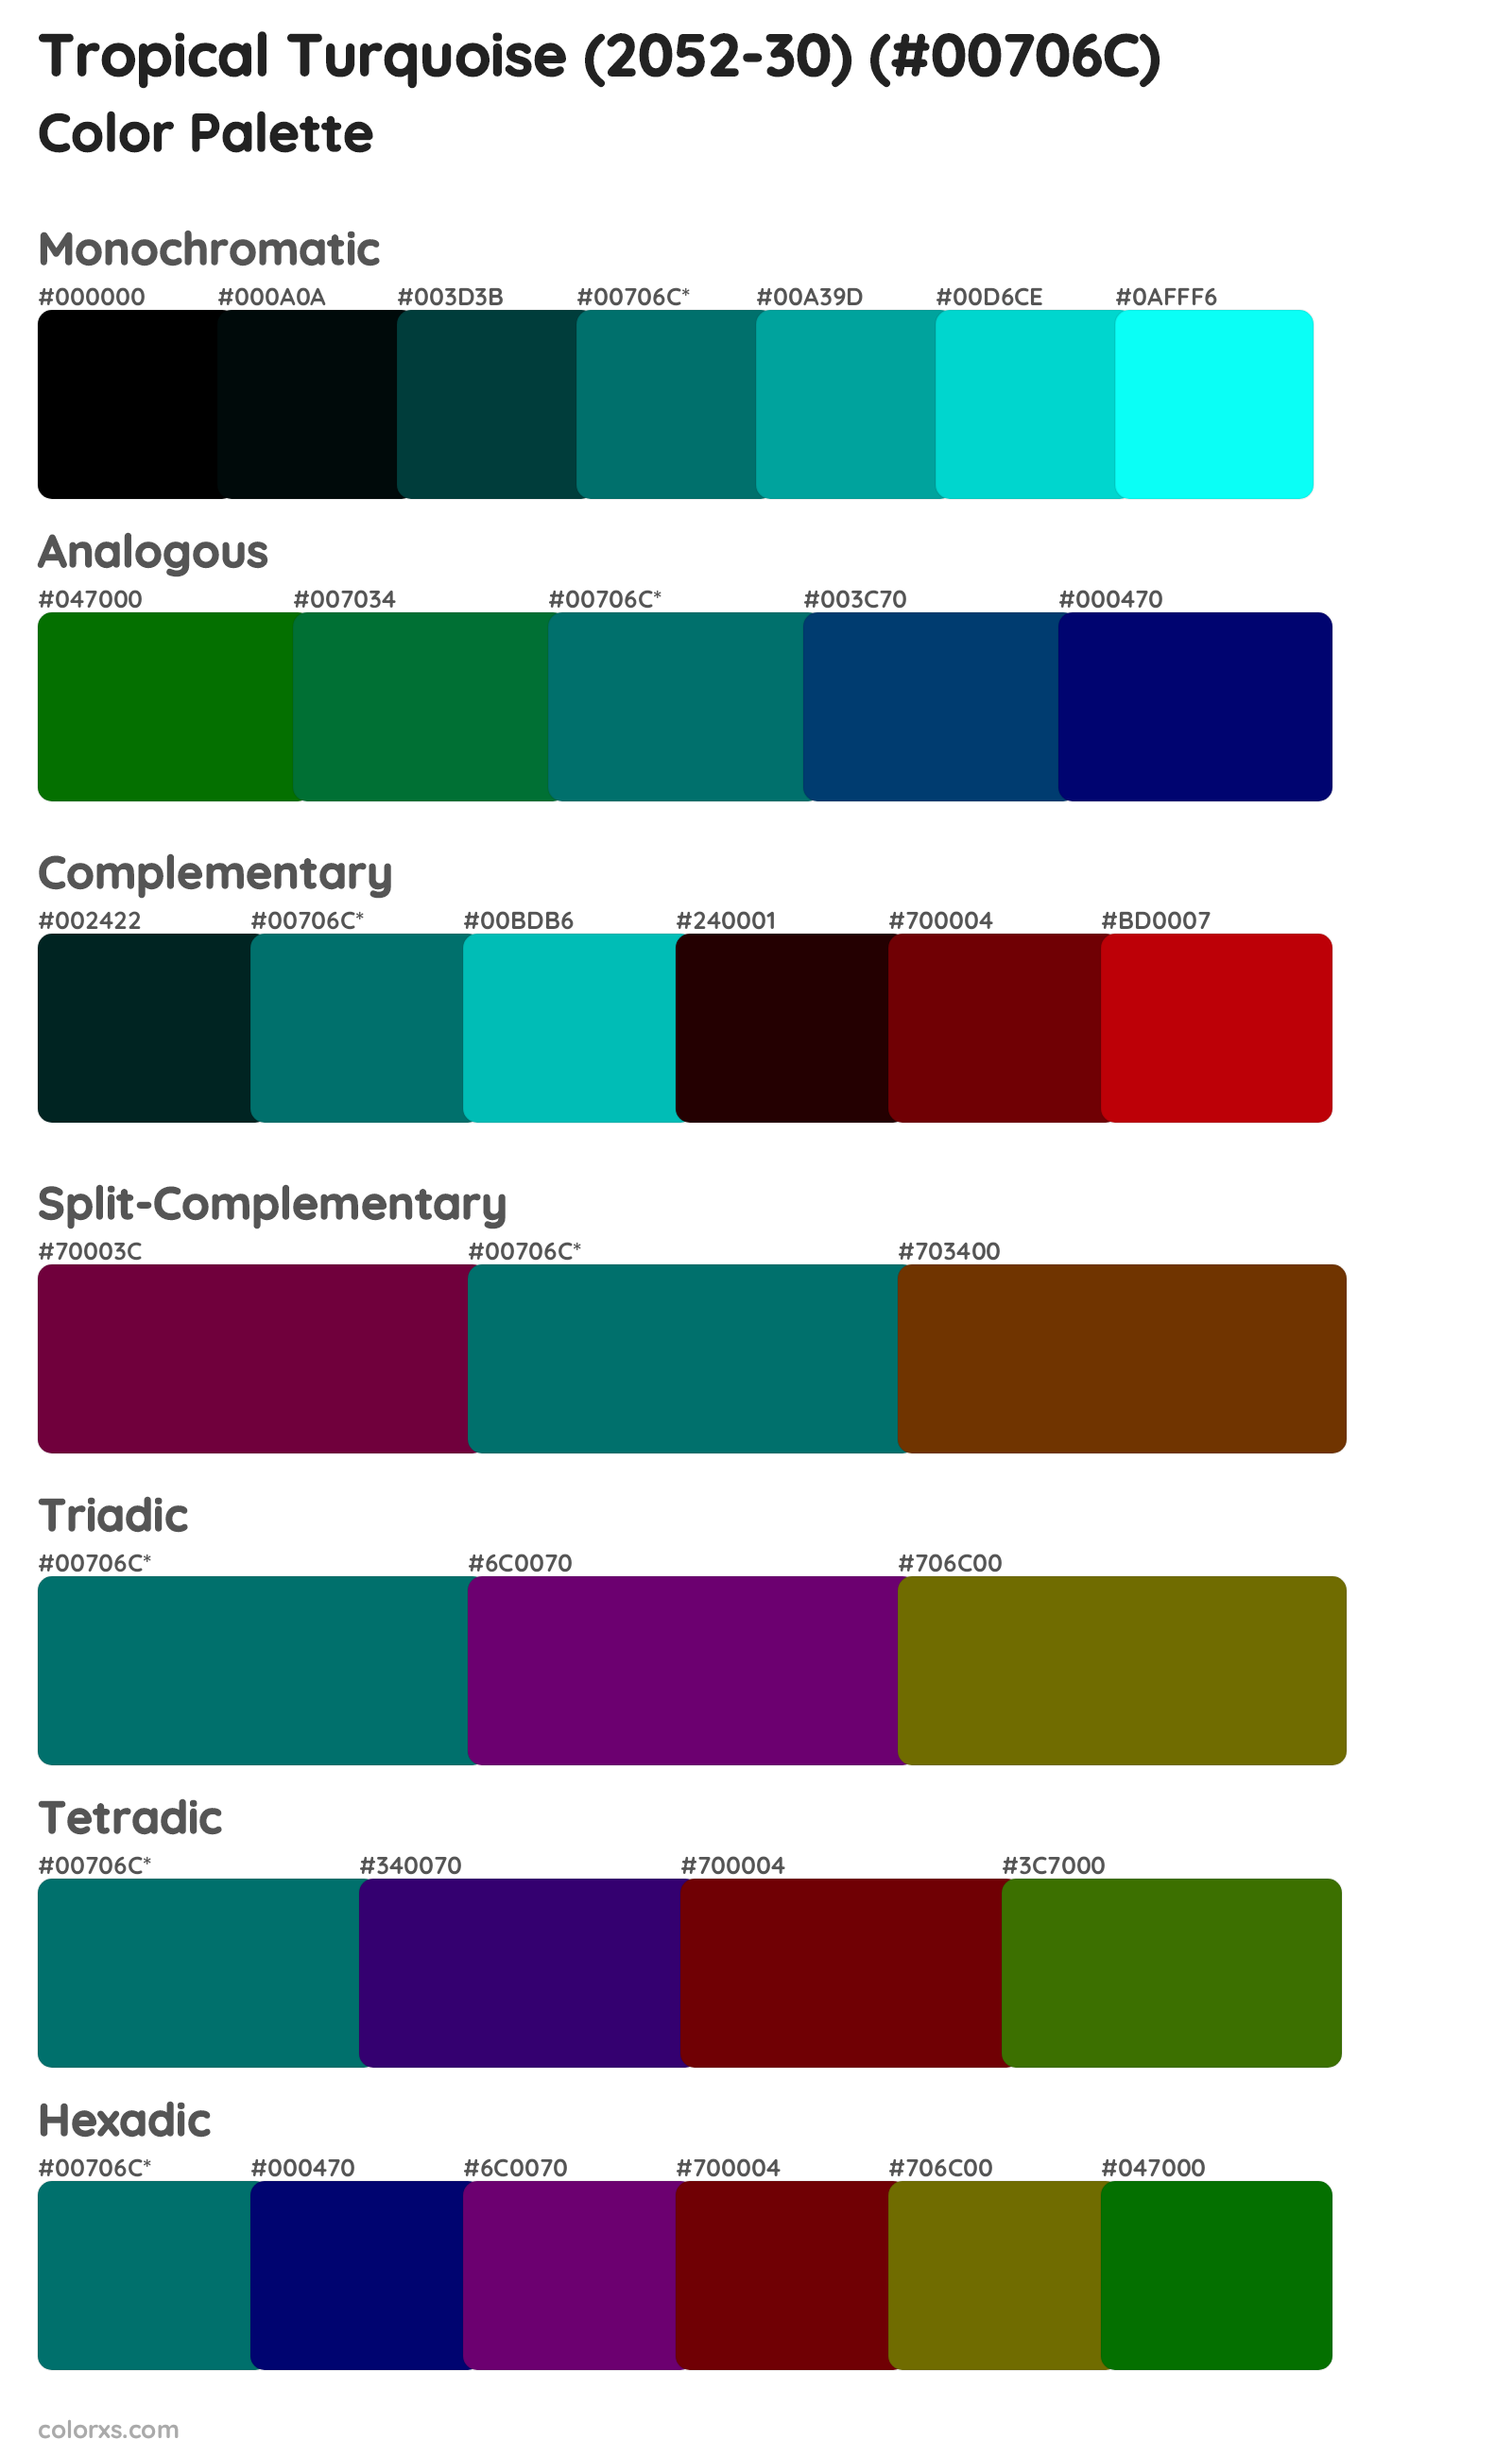 Tropical Turquoise (2052-30) Color Scheme Palettes